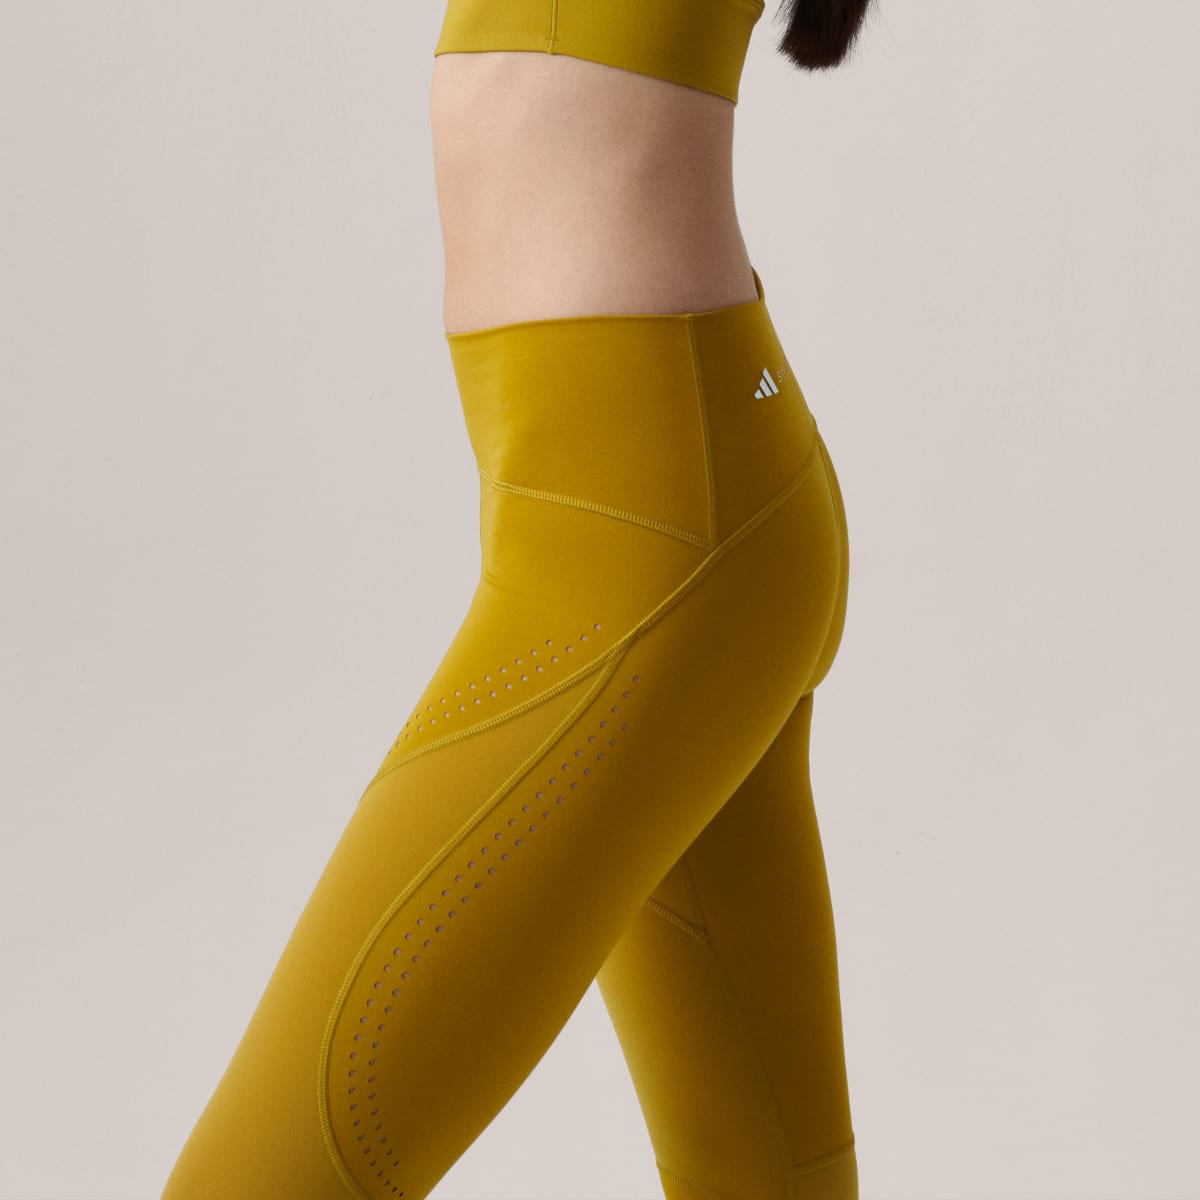 Adidas Leggings 7/8 para Treino Optime TruePurpose adidas by Stella McCartney. 7